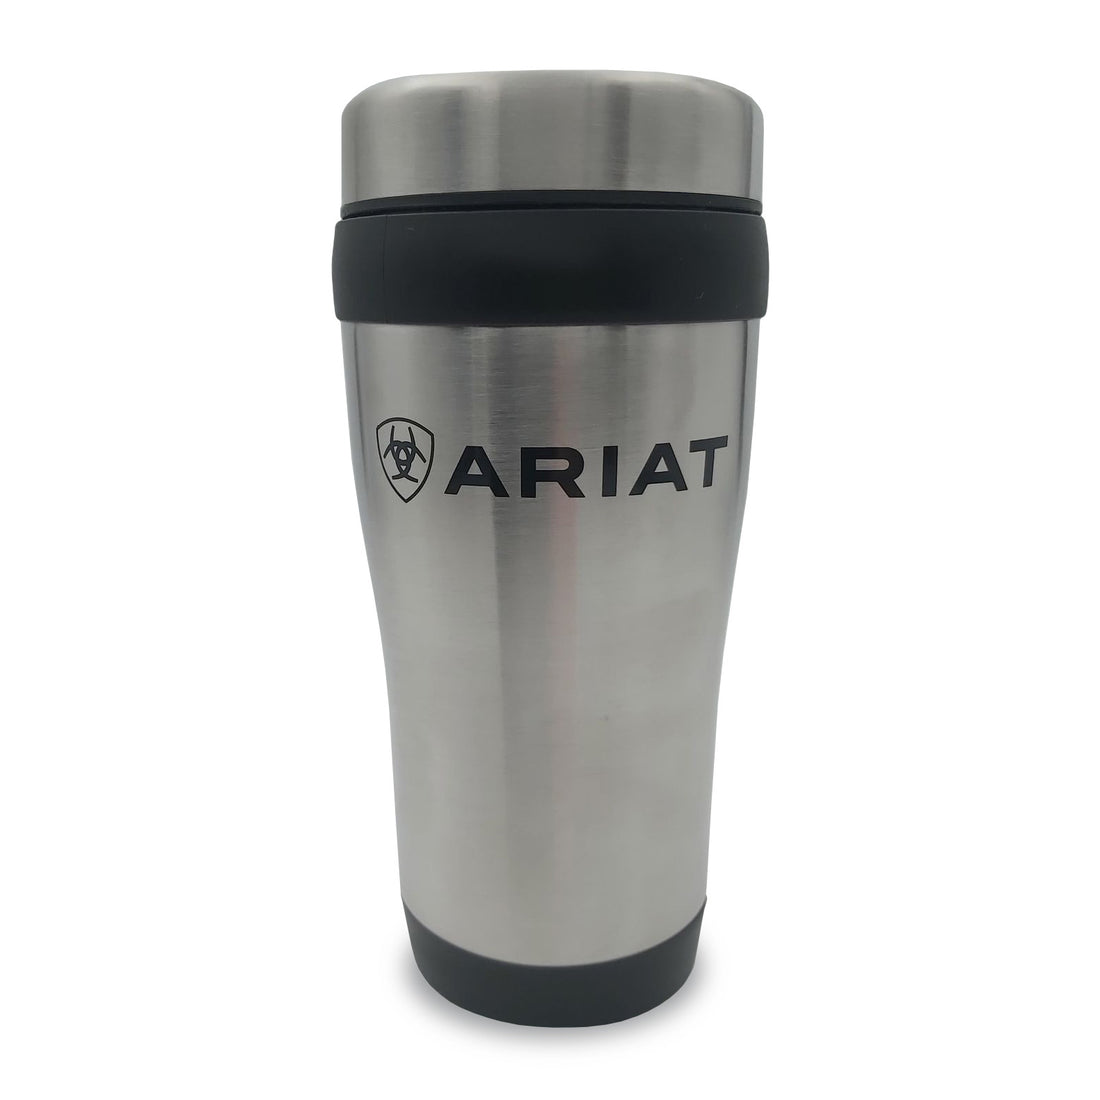 Ariat Thermal Mug